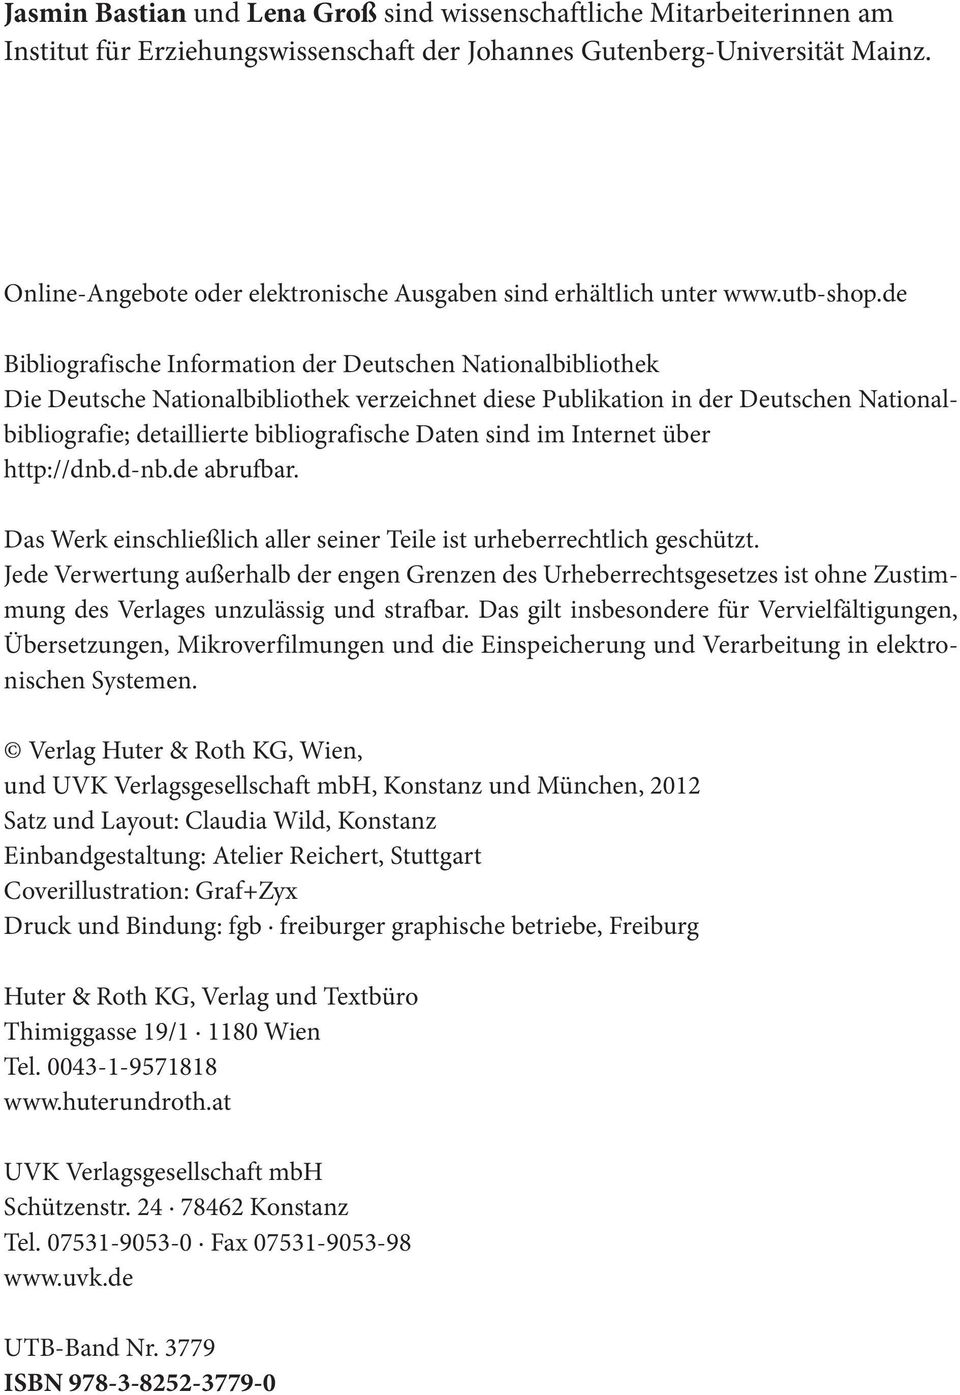 de Bibliografische Information der Deutschen Nationalbibliothek Die Deutsche Nationalbibliothek verzeichnet diese Publikation in der Deutschen Nationalbibliografie; detaillierte bibliografische Daten